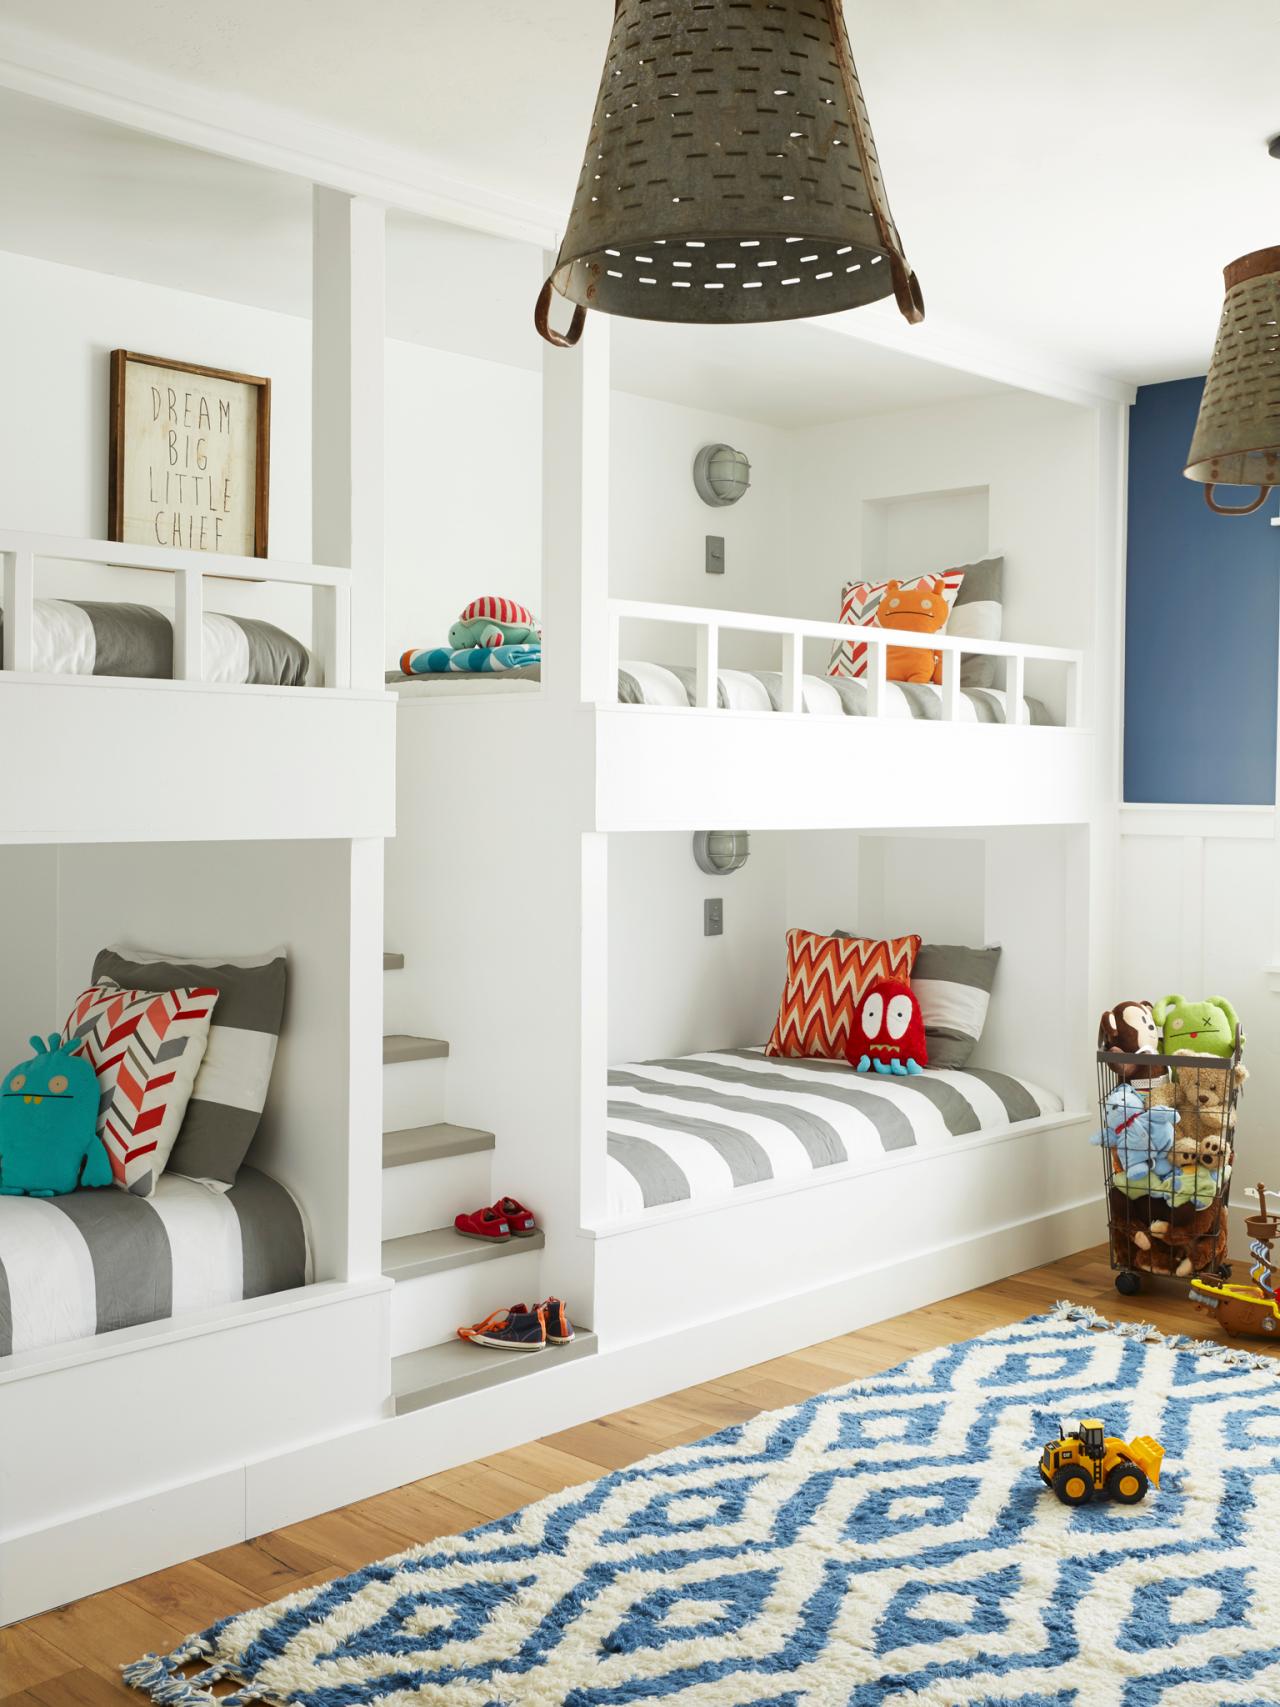 Giường tầng cho gia đình
Giường tầng đem lại không gian ngủ tiện nghi cho gia đình với ánh sáng tự nhiên và không gian lưu trữ đồ dùng. Bạn có thể sử dụng giường tầng để tiết kiệm diện tích trong căn phòng nhỏ hoặc thật tiện lợi để chia sẻ không gian ngủ với anh chị em. Thiết kế giường tầng đa dạng, phù hợp với mọi nhu cầu của bạn.